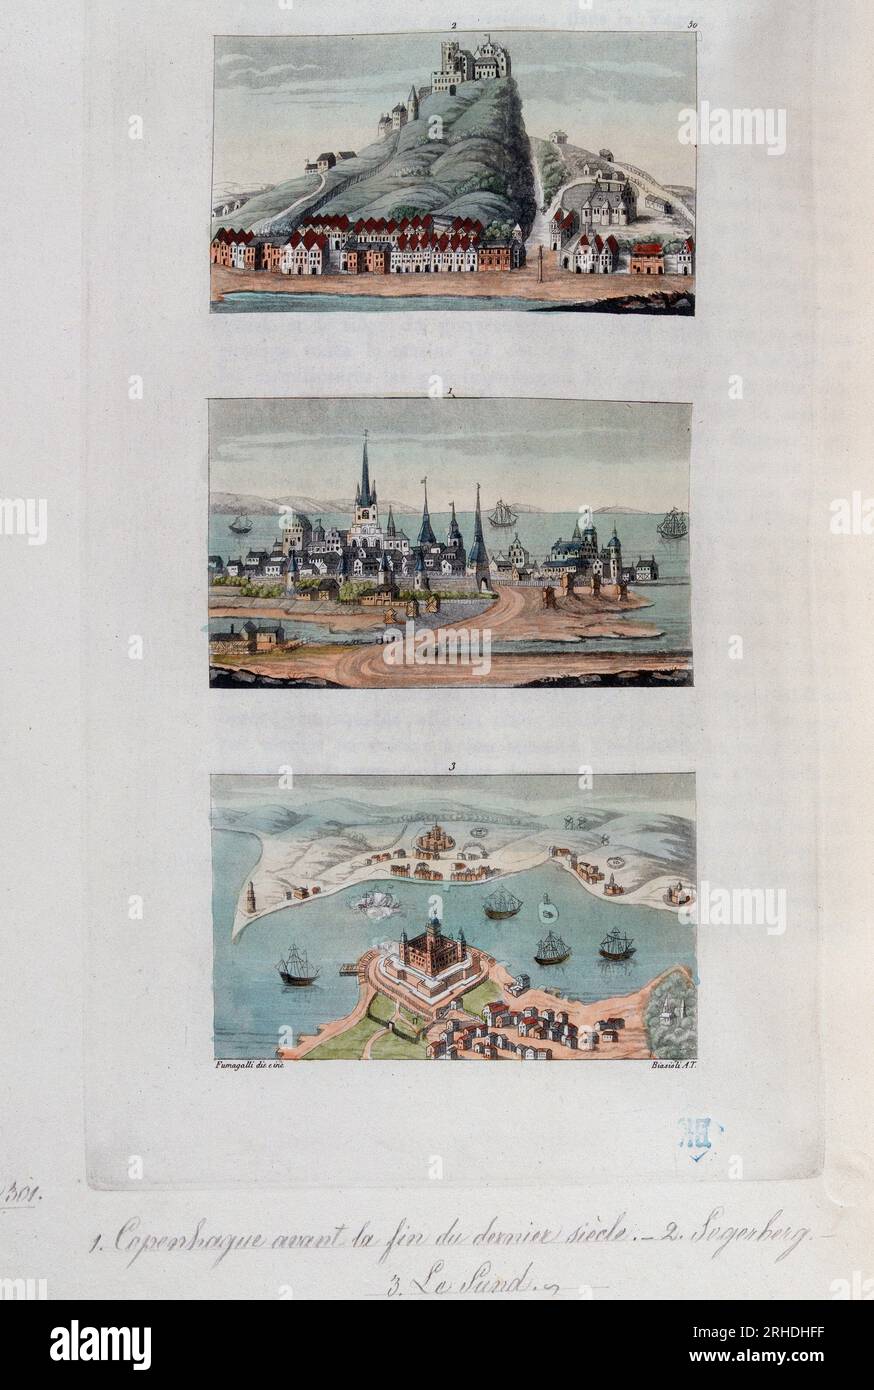 Les Villes danoises de Copenhague, Segerberg et Sund, fin XVIIIeme siecle - in 'Le costume ancien et modern' par Ferrario, 1819-20 Stockfoto